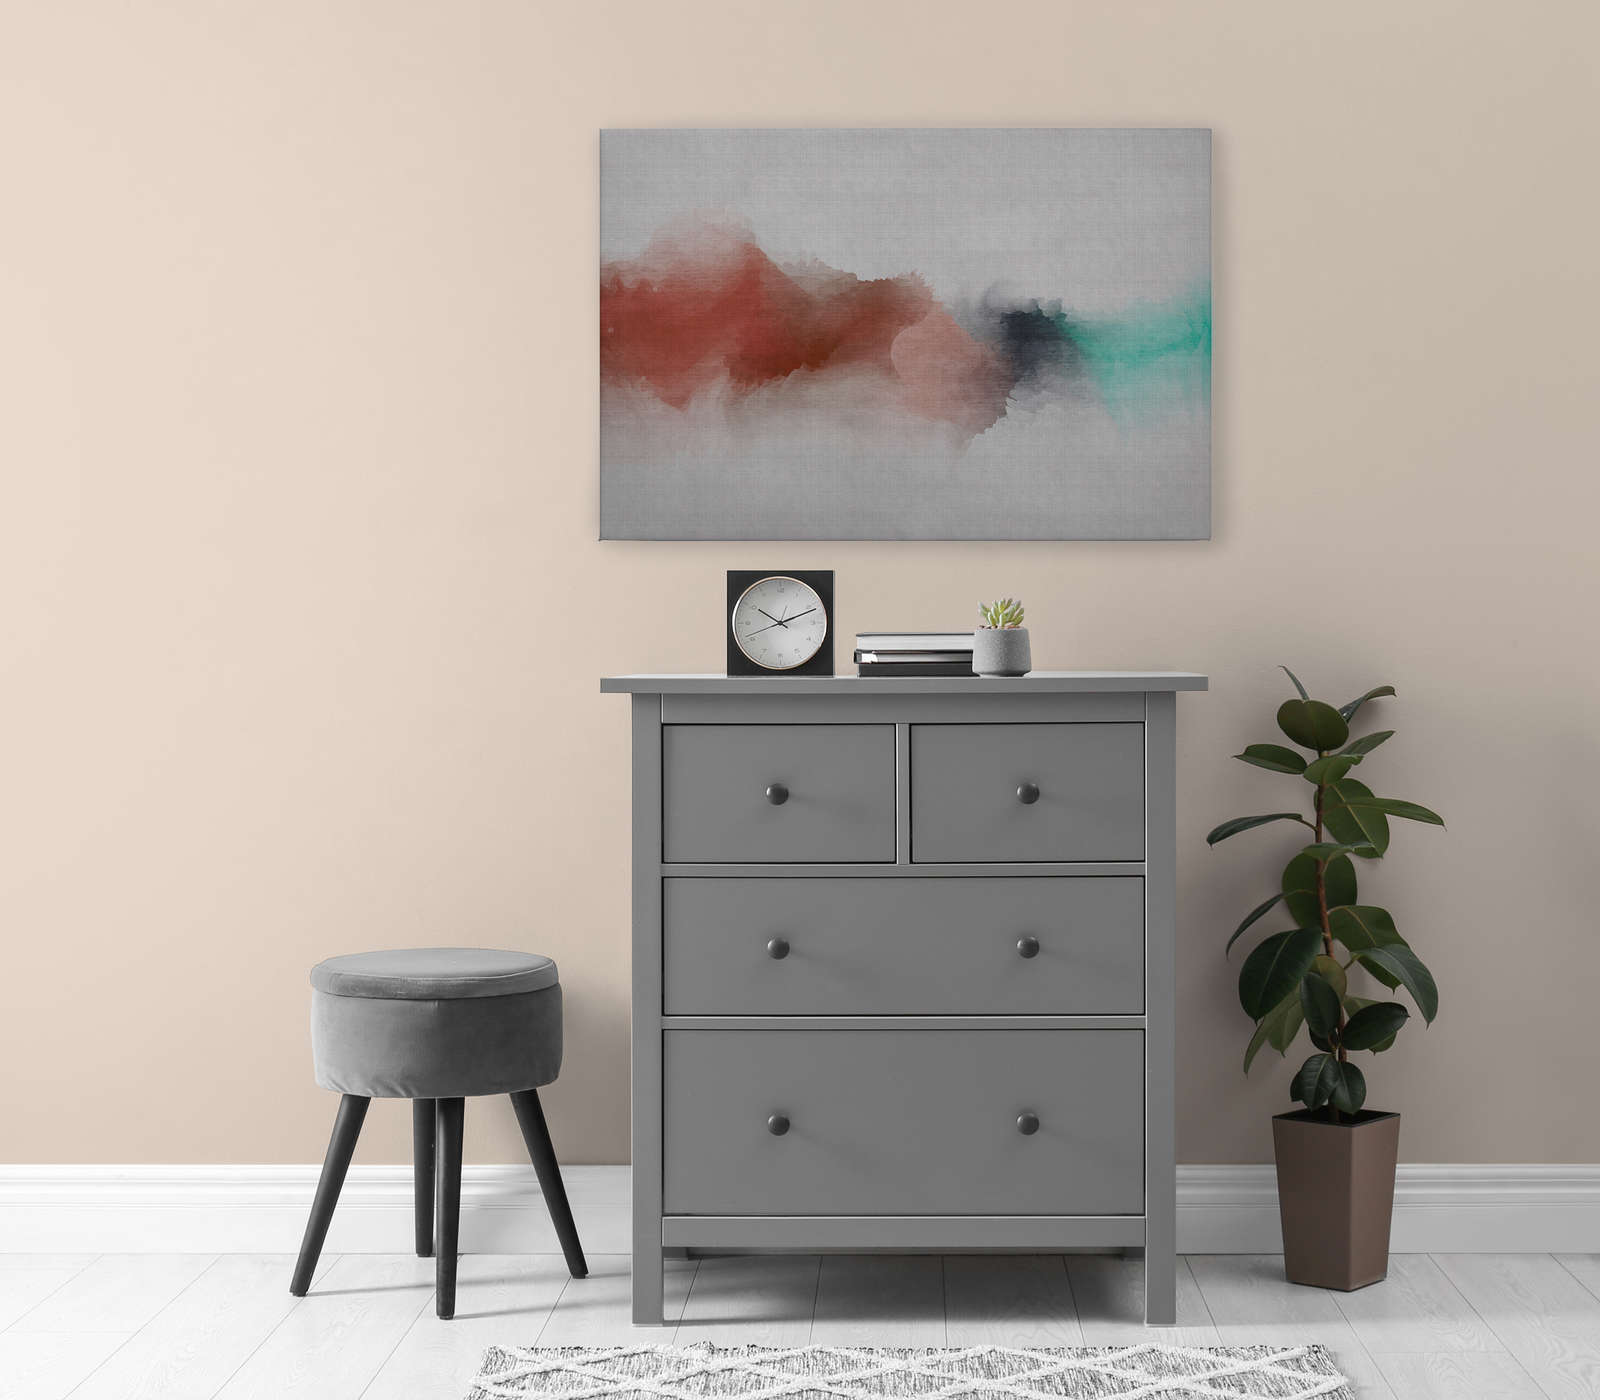             Daydream 2 - Tableau toile structure lin naturel avec tache de couleur style aquarelle - 0,90 m x 0,60 m
        